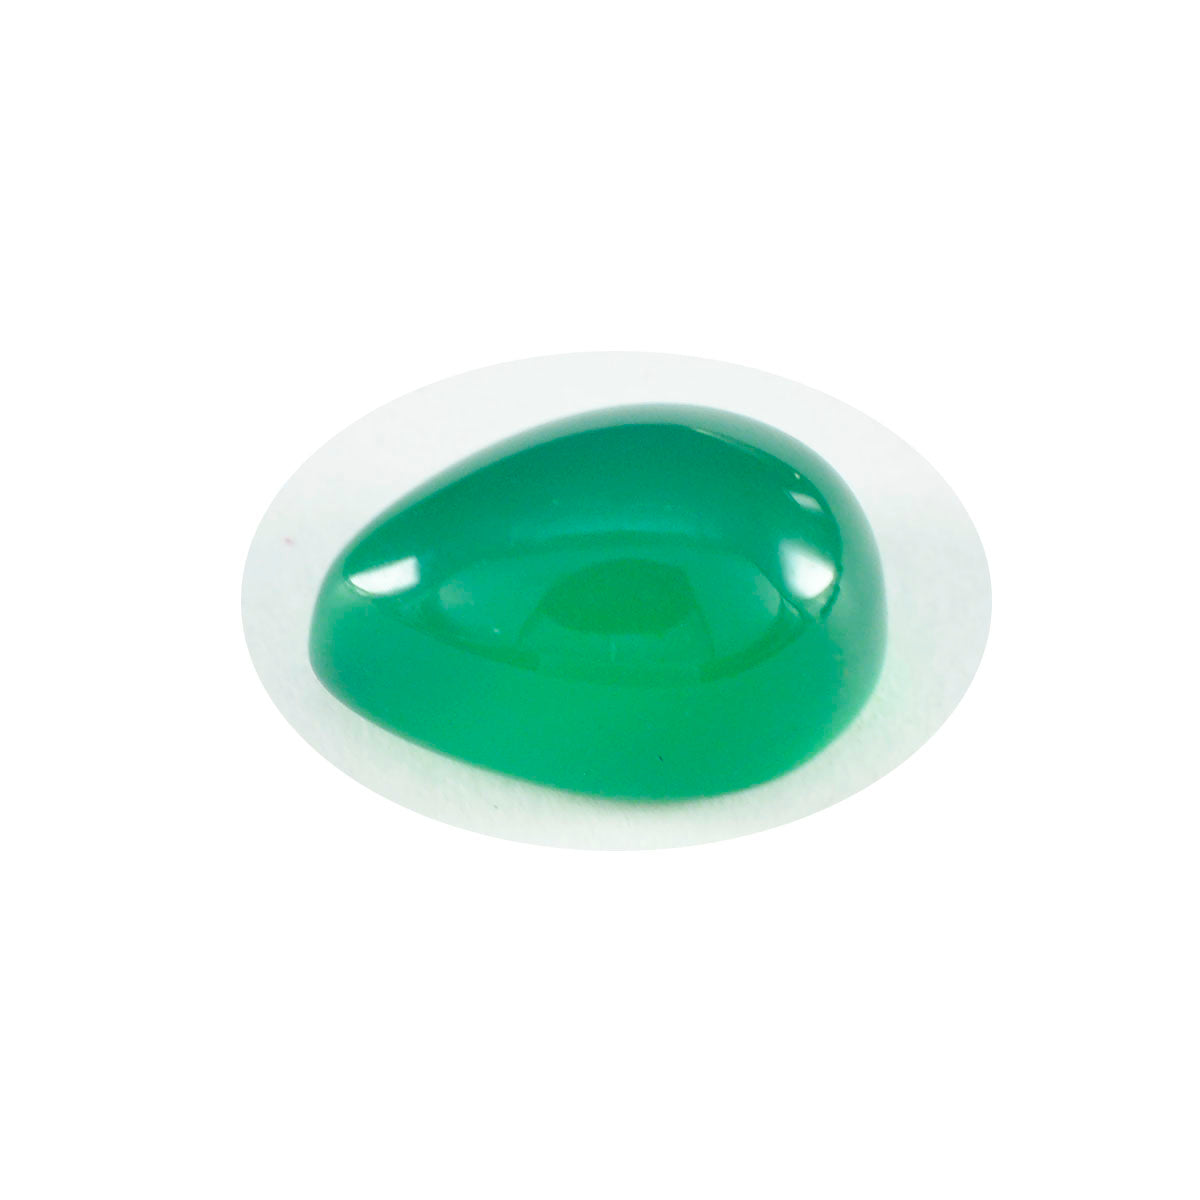 riyogems 1 шт., зеленый оникс, кабошон 8x12 мм, грушевидная форма, красивое качество, свободный драгоценный камень